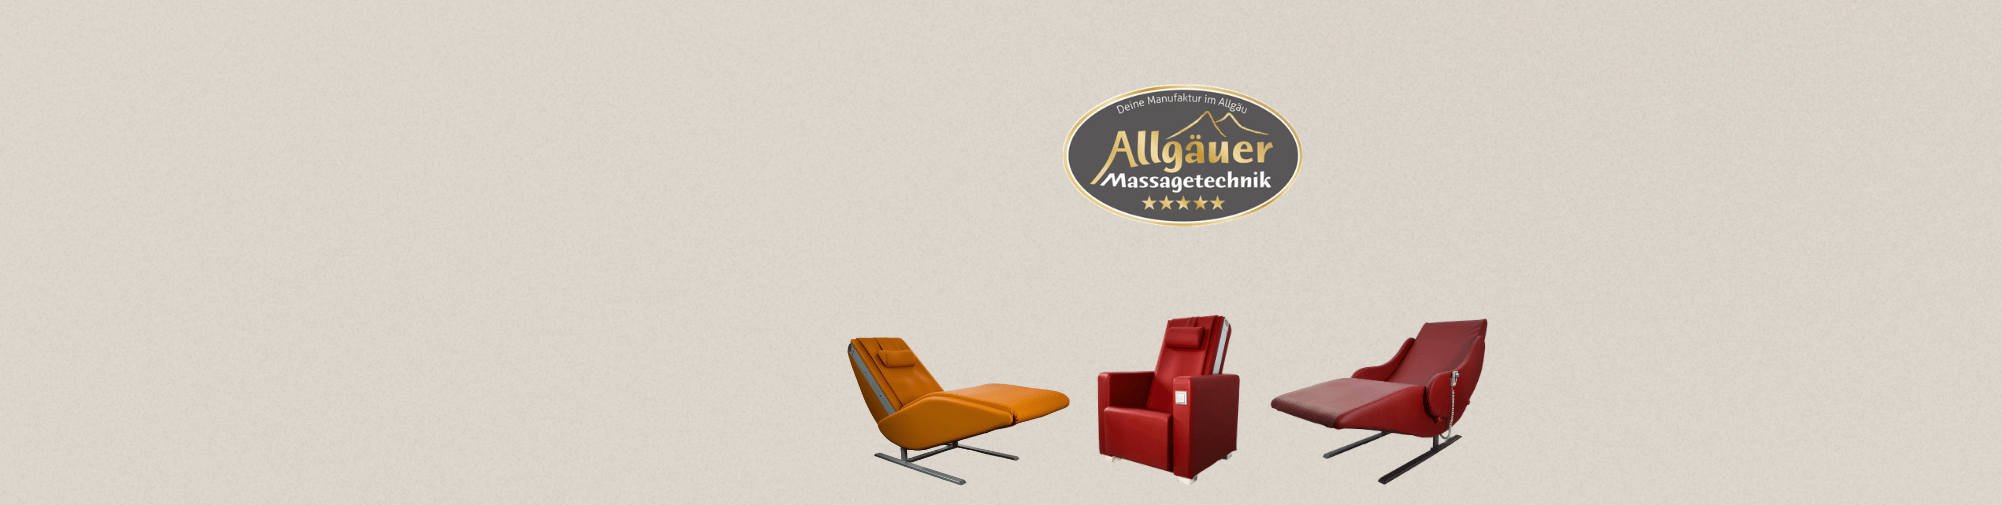 Allgäuer Massagetechnik - El mundo del sillón de masaje